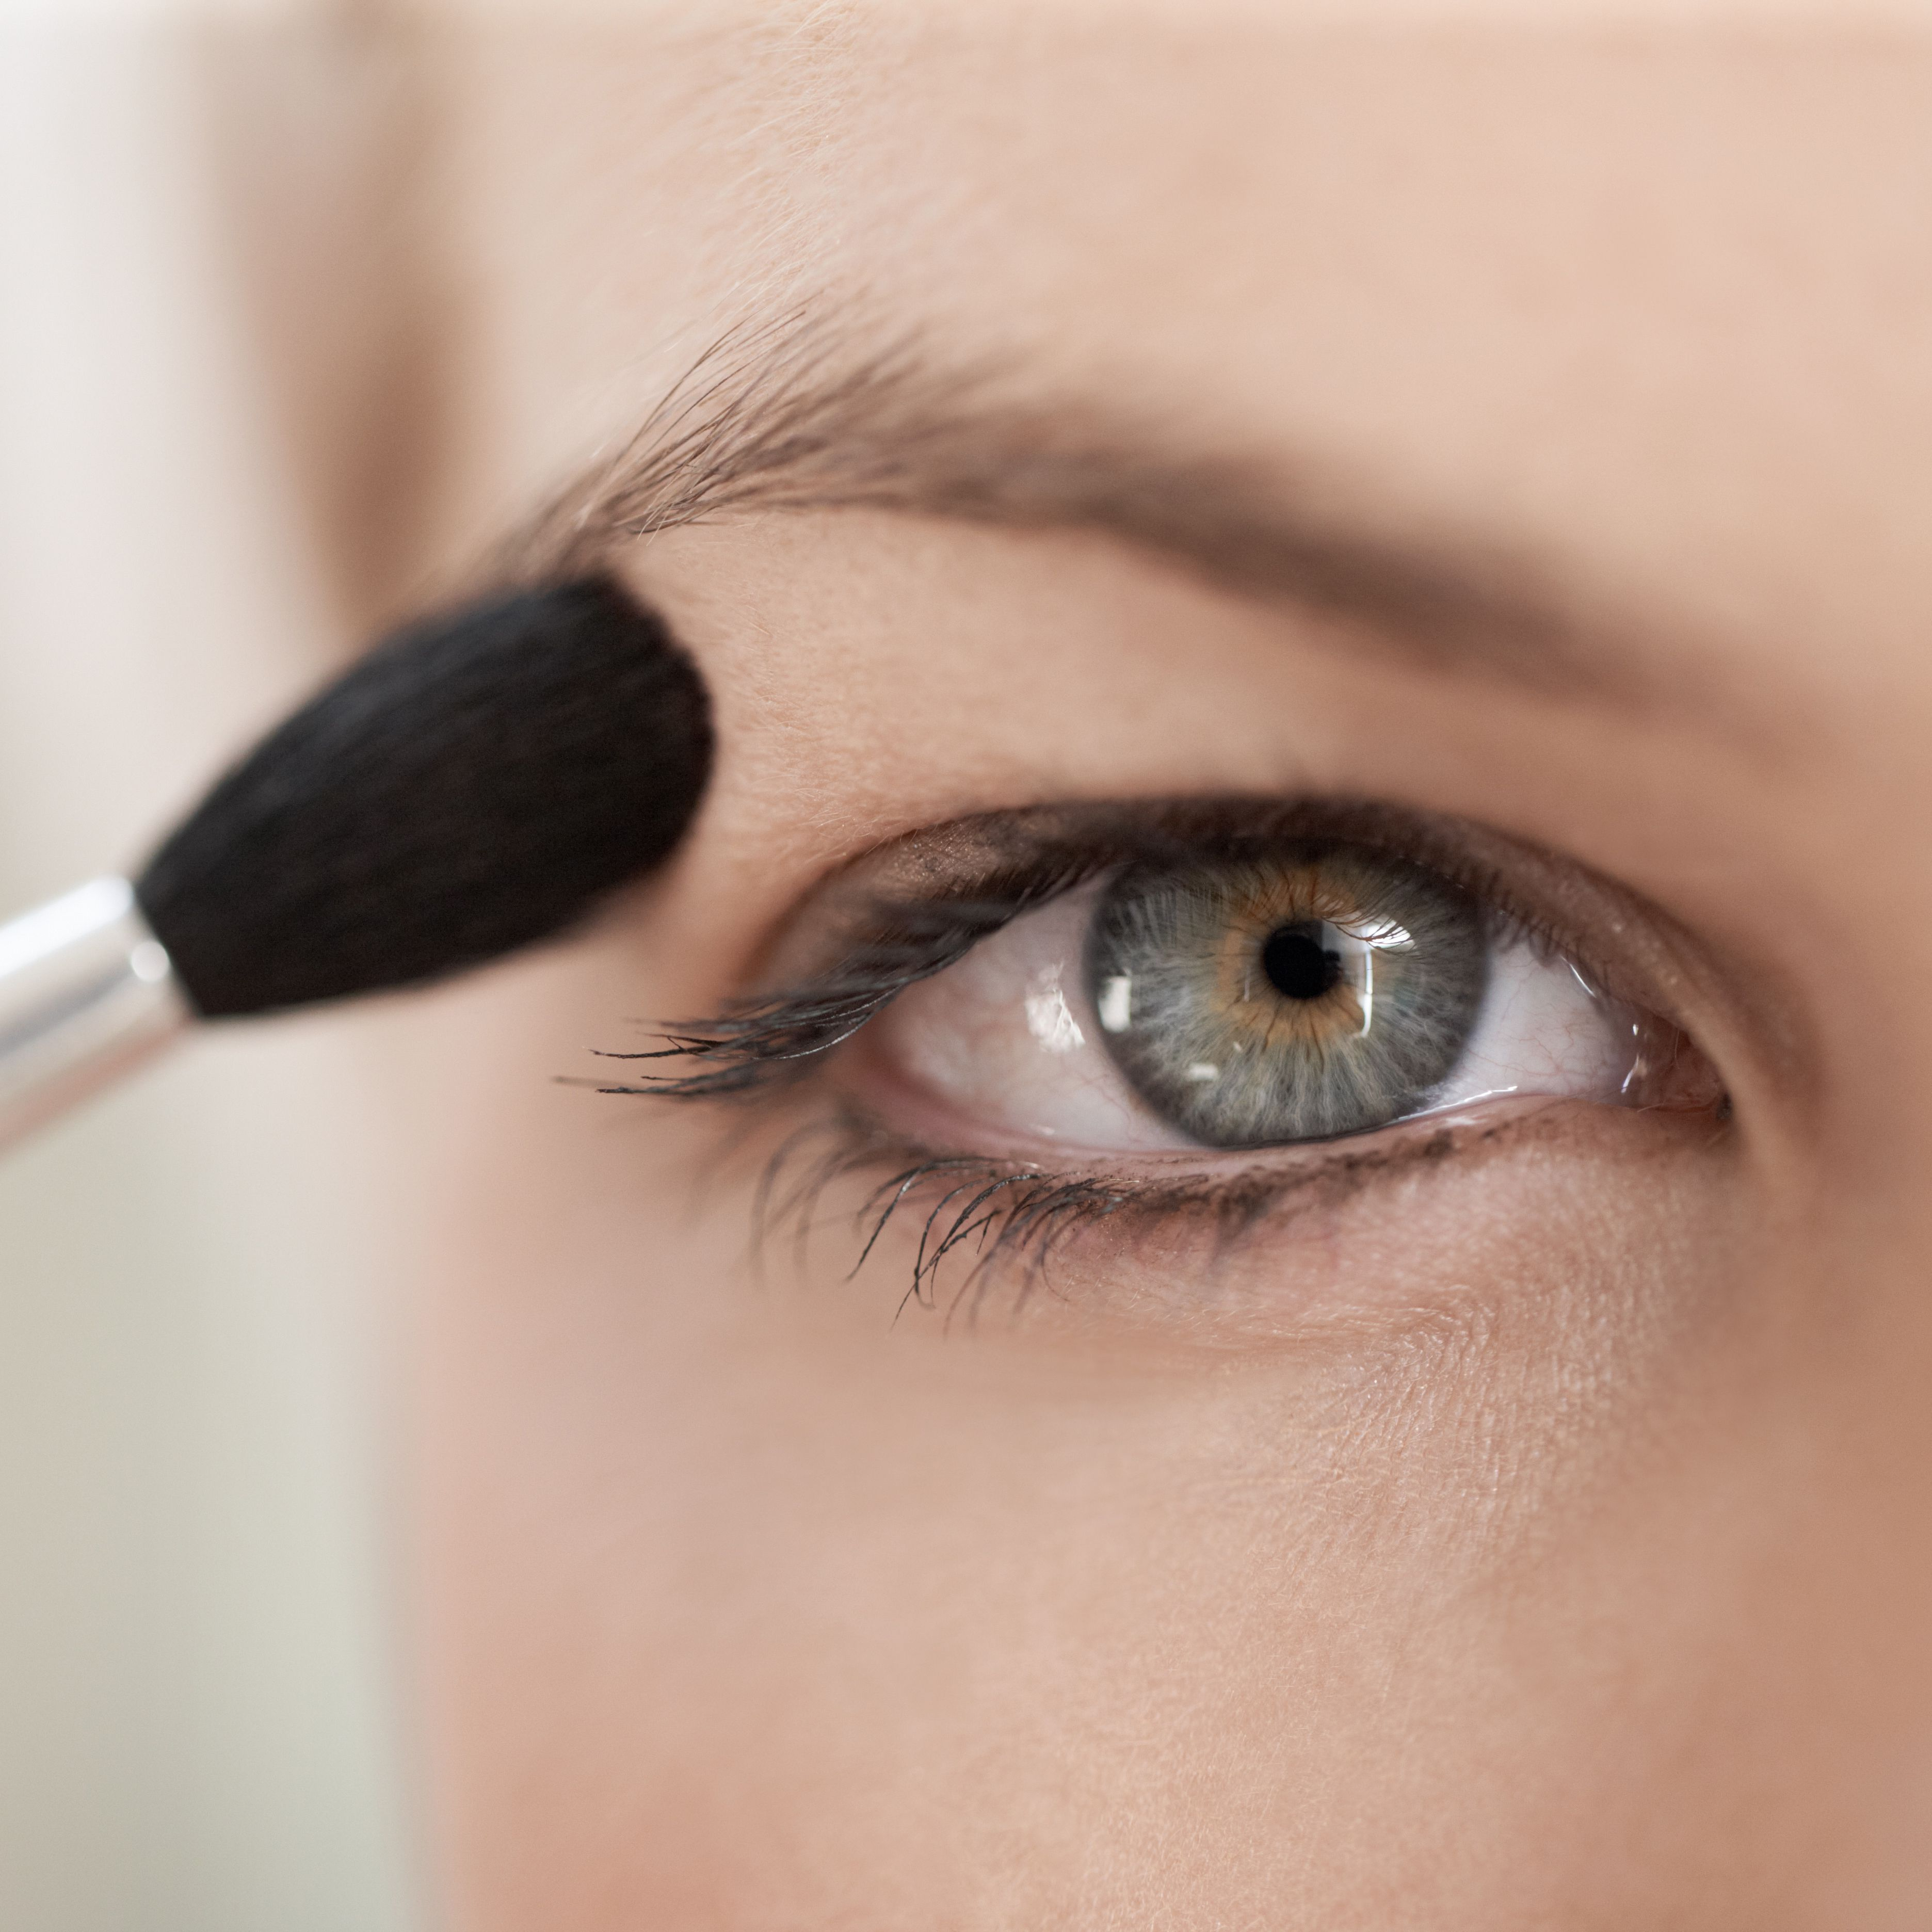 Natural Eye Makeup Brown Eyes Makeup Tricks For Hooded Eyes Hooded Eyes Makeup Tips And Tricks